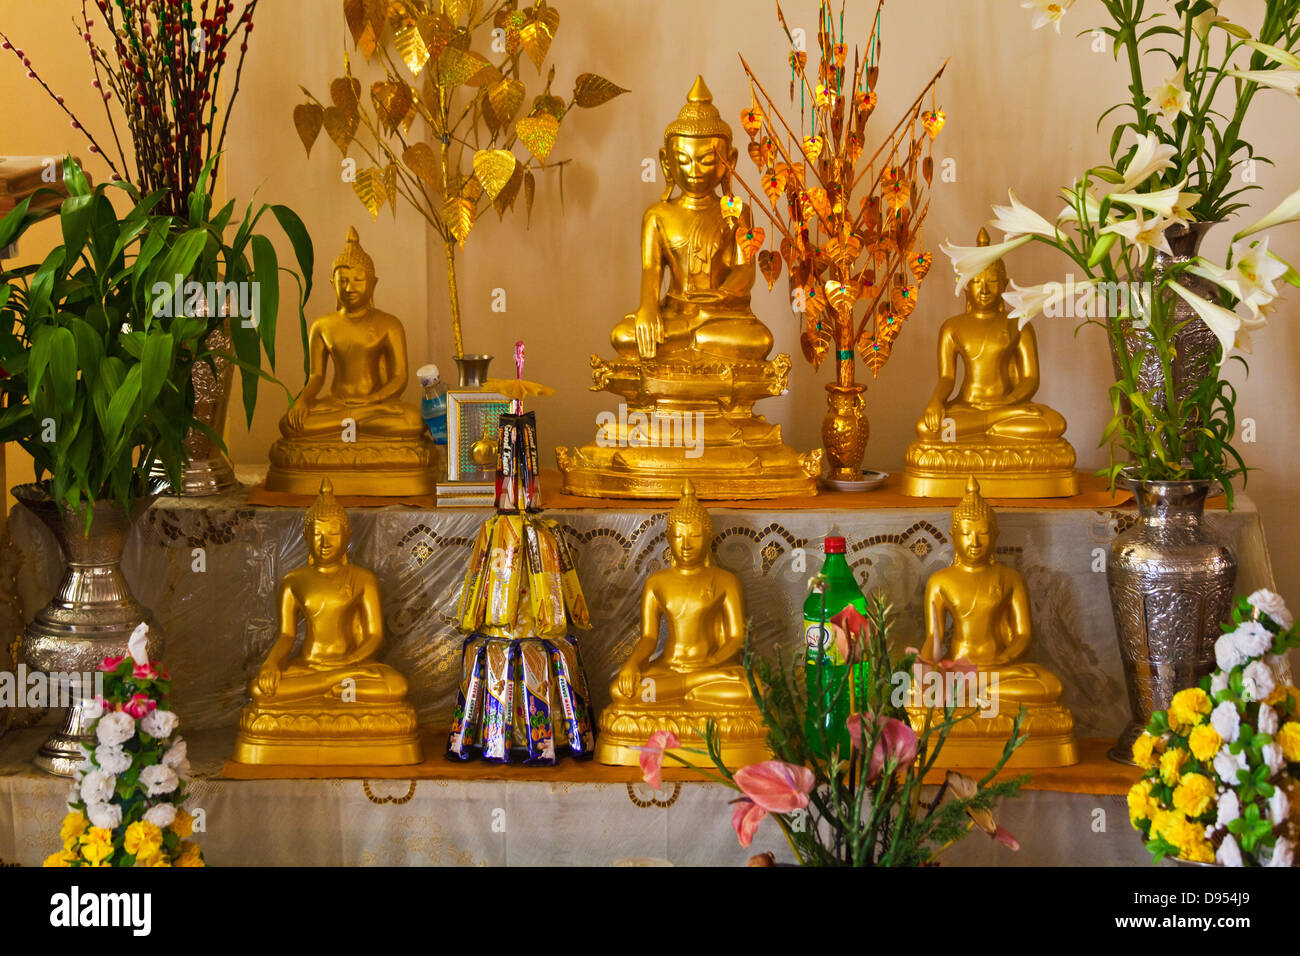 Statuen von BUDDHA in einem buddhistischen Kloster - HSIPAW, MYANMAR Stockfoto